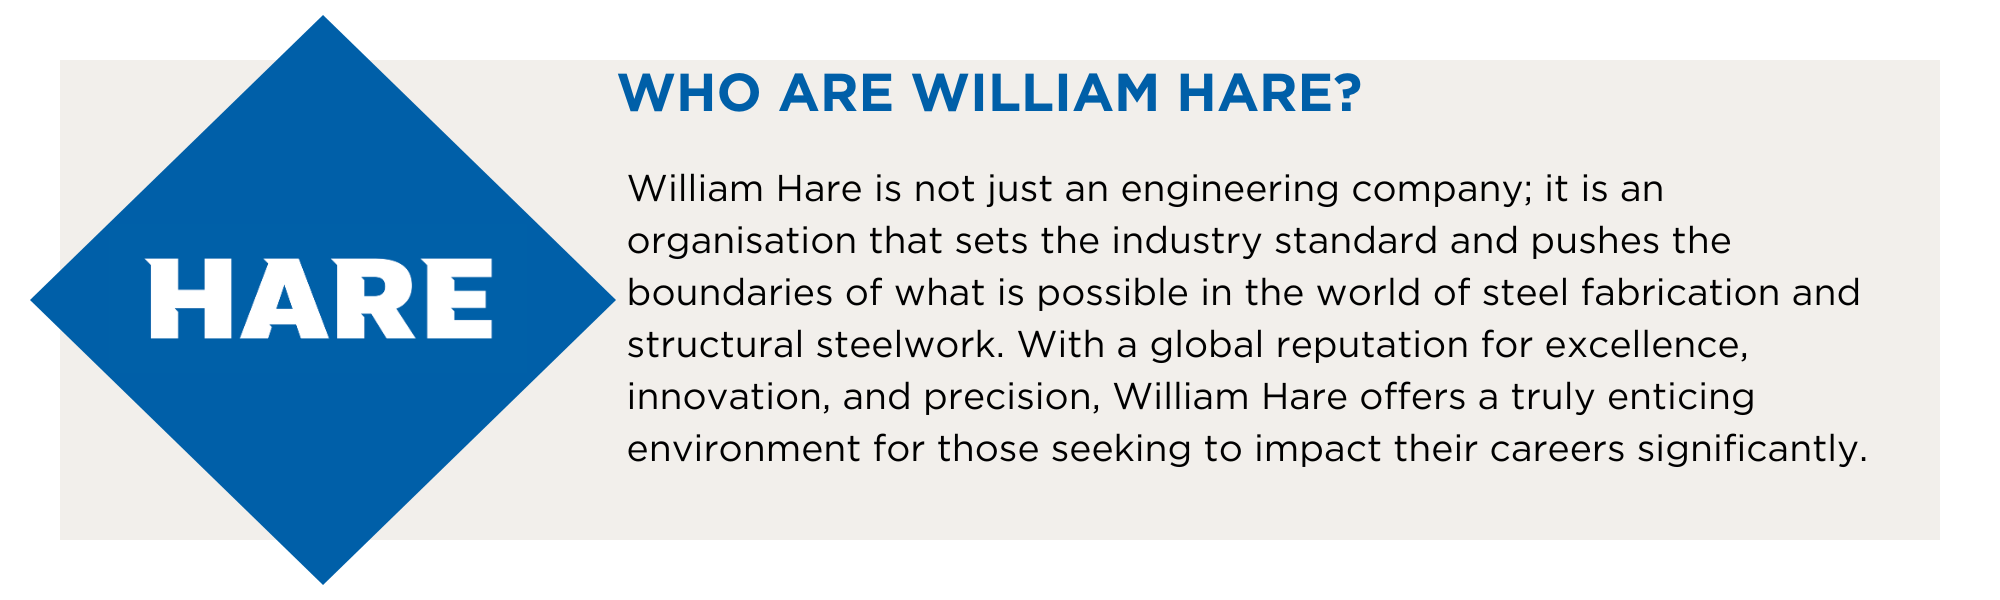 Who are william hare?